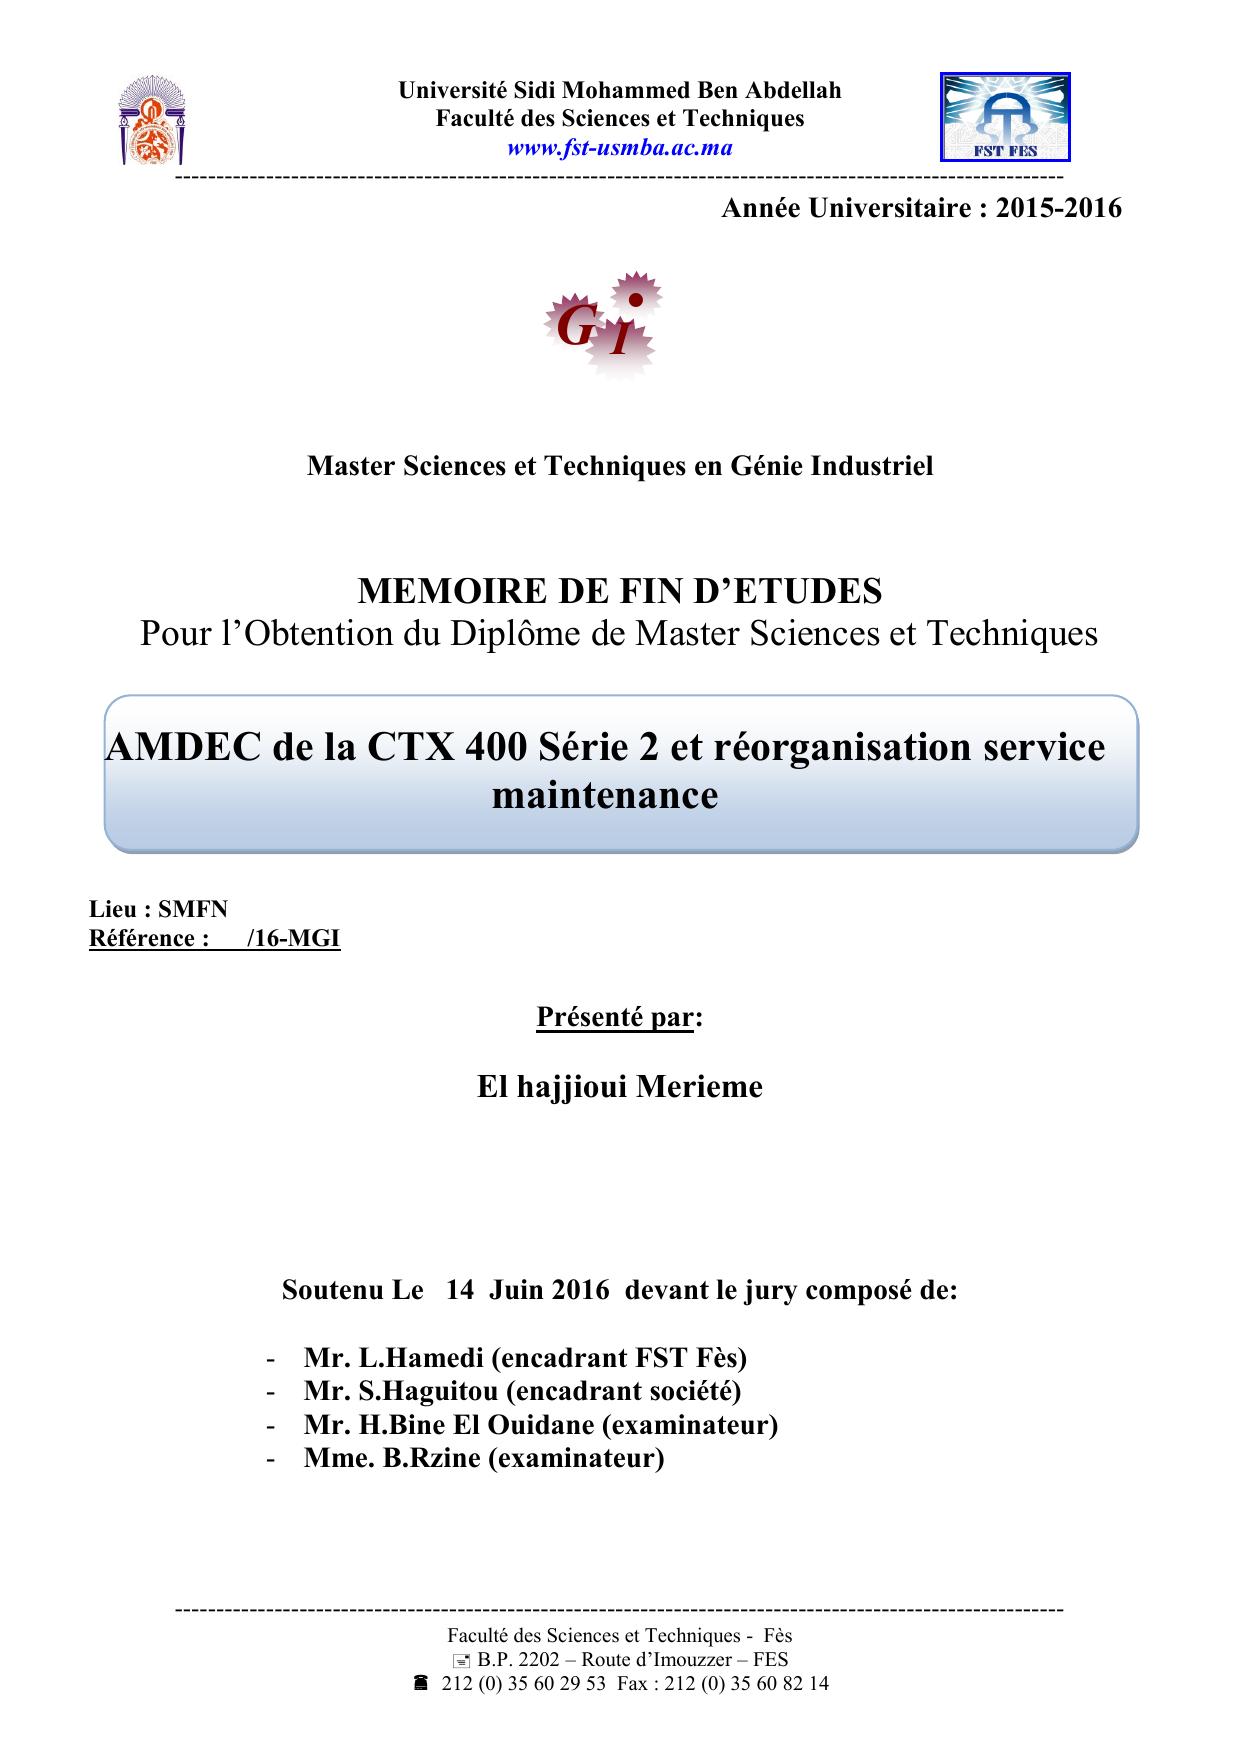 AMDEC de la CTX 400 Série 2 et réorganisation service maintenance